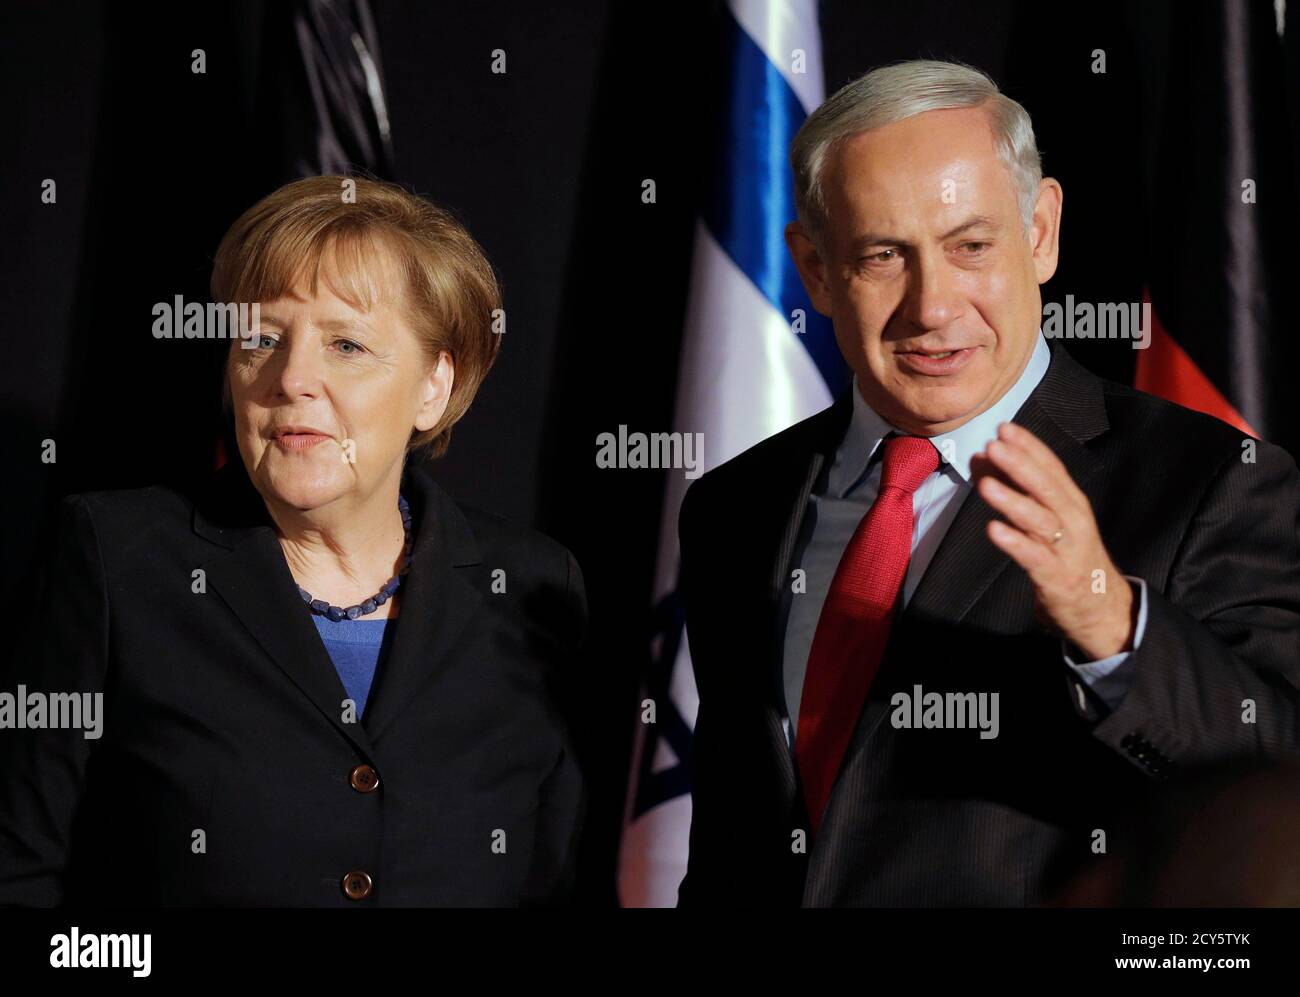 Israels Prime Minister Benjamin Netanyahu (R) steht neben Bundeskanzlerin Angela Merkel nach ihrer gemeinsamen Pressekonferenz in Jerusalem 25. Februar 2014. Deutschland sieht Iran als eine potenzielle Bedrohung nicht nur für Israel, aber auch in europäische Länder, Merkel, sagte am Dienstag auf einer gemeinsamen Pressekonferenz mit Netanyahu. REUTERS/Ammar Awad (JERUSALEM - Tags: Politik) Stockfoto